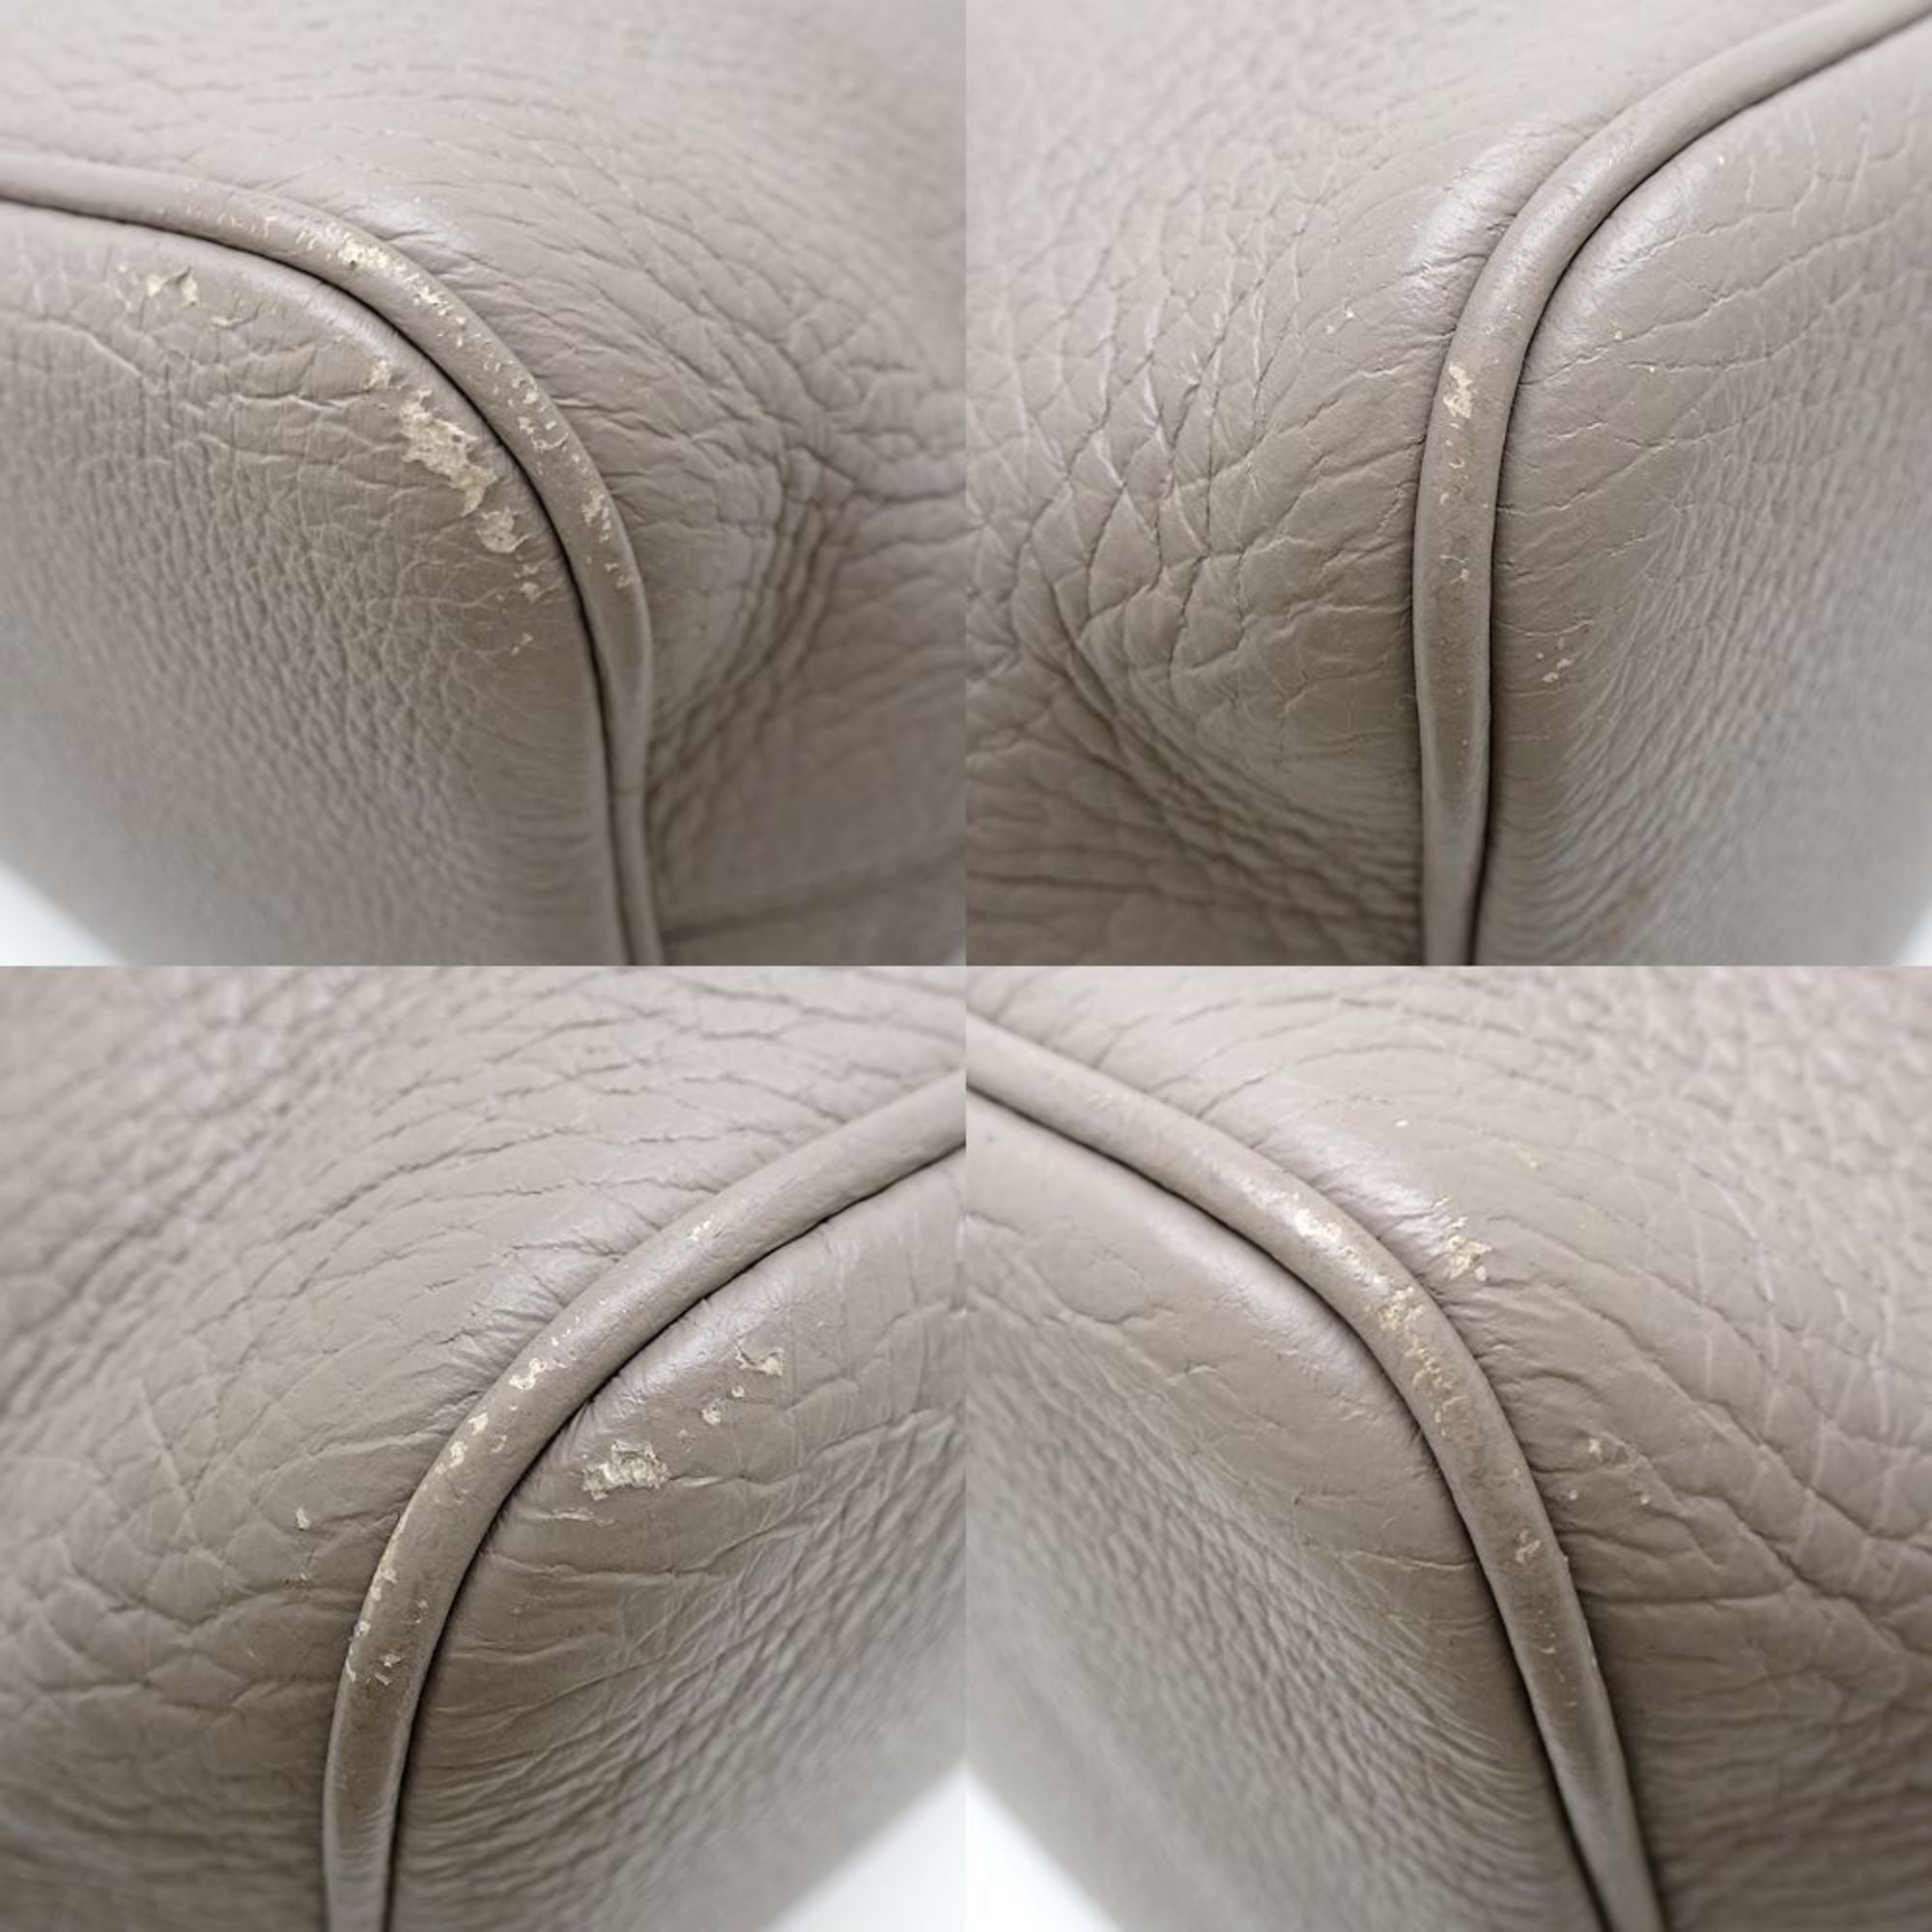 BOTTEGAVENETA Bottega Veneta shoulder bag leather beige 351203